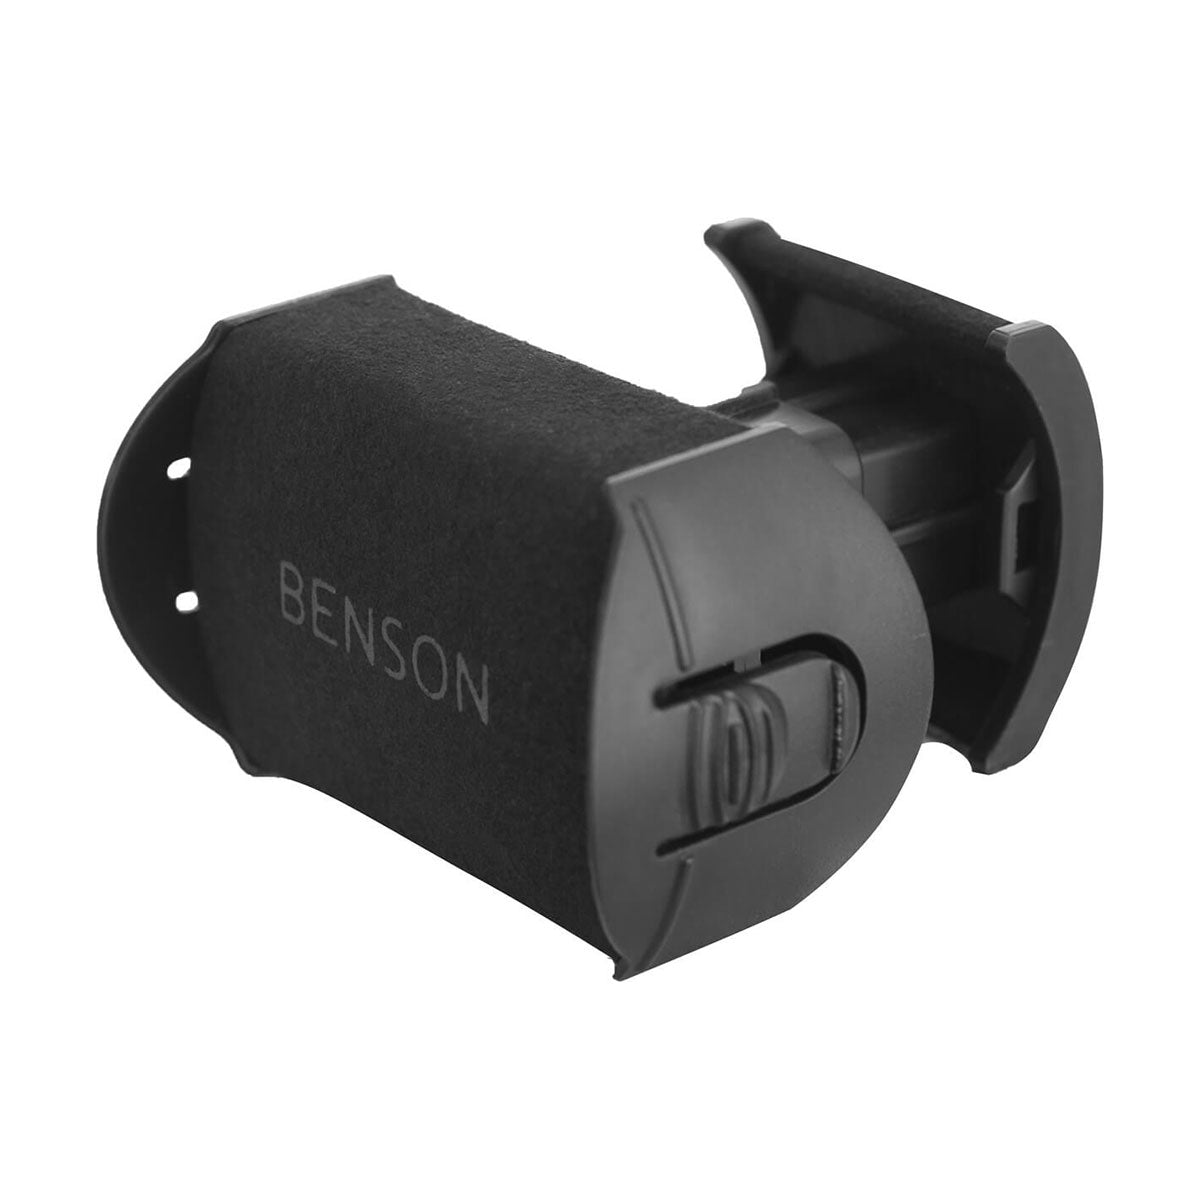 Benson Black Series 8.16 - Watchwinder for 8 watches